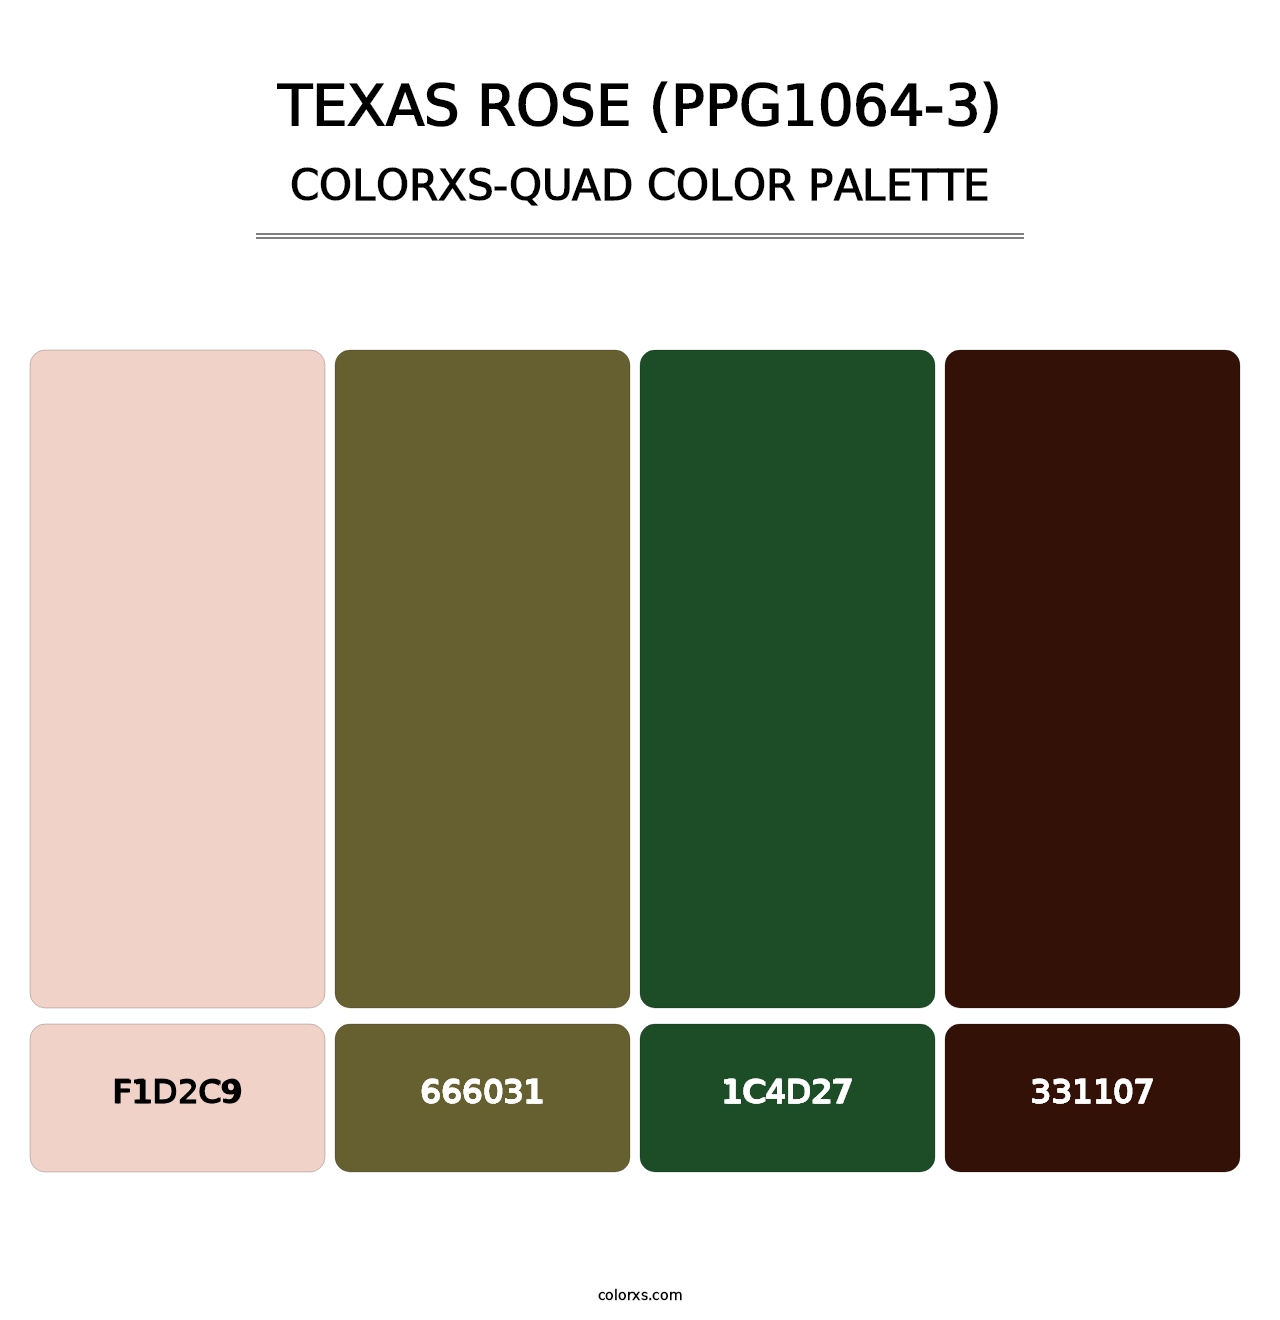 Texas Rose (PPG1064-3) - Colorxs Quad Palette